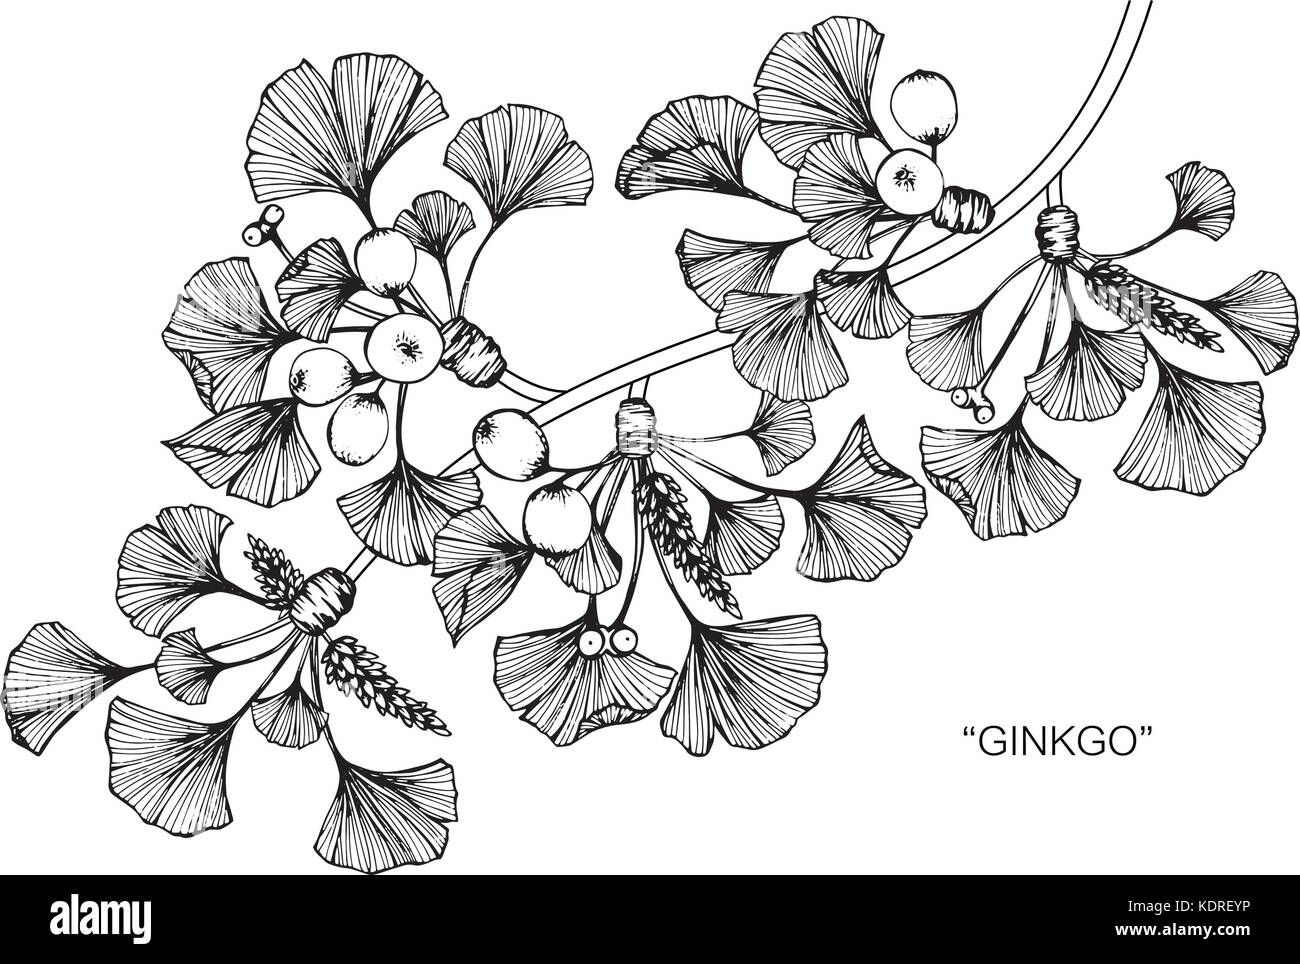 Feuille De Ginkgo Illustration Dessin De Fleurs Noir Et